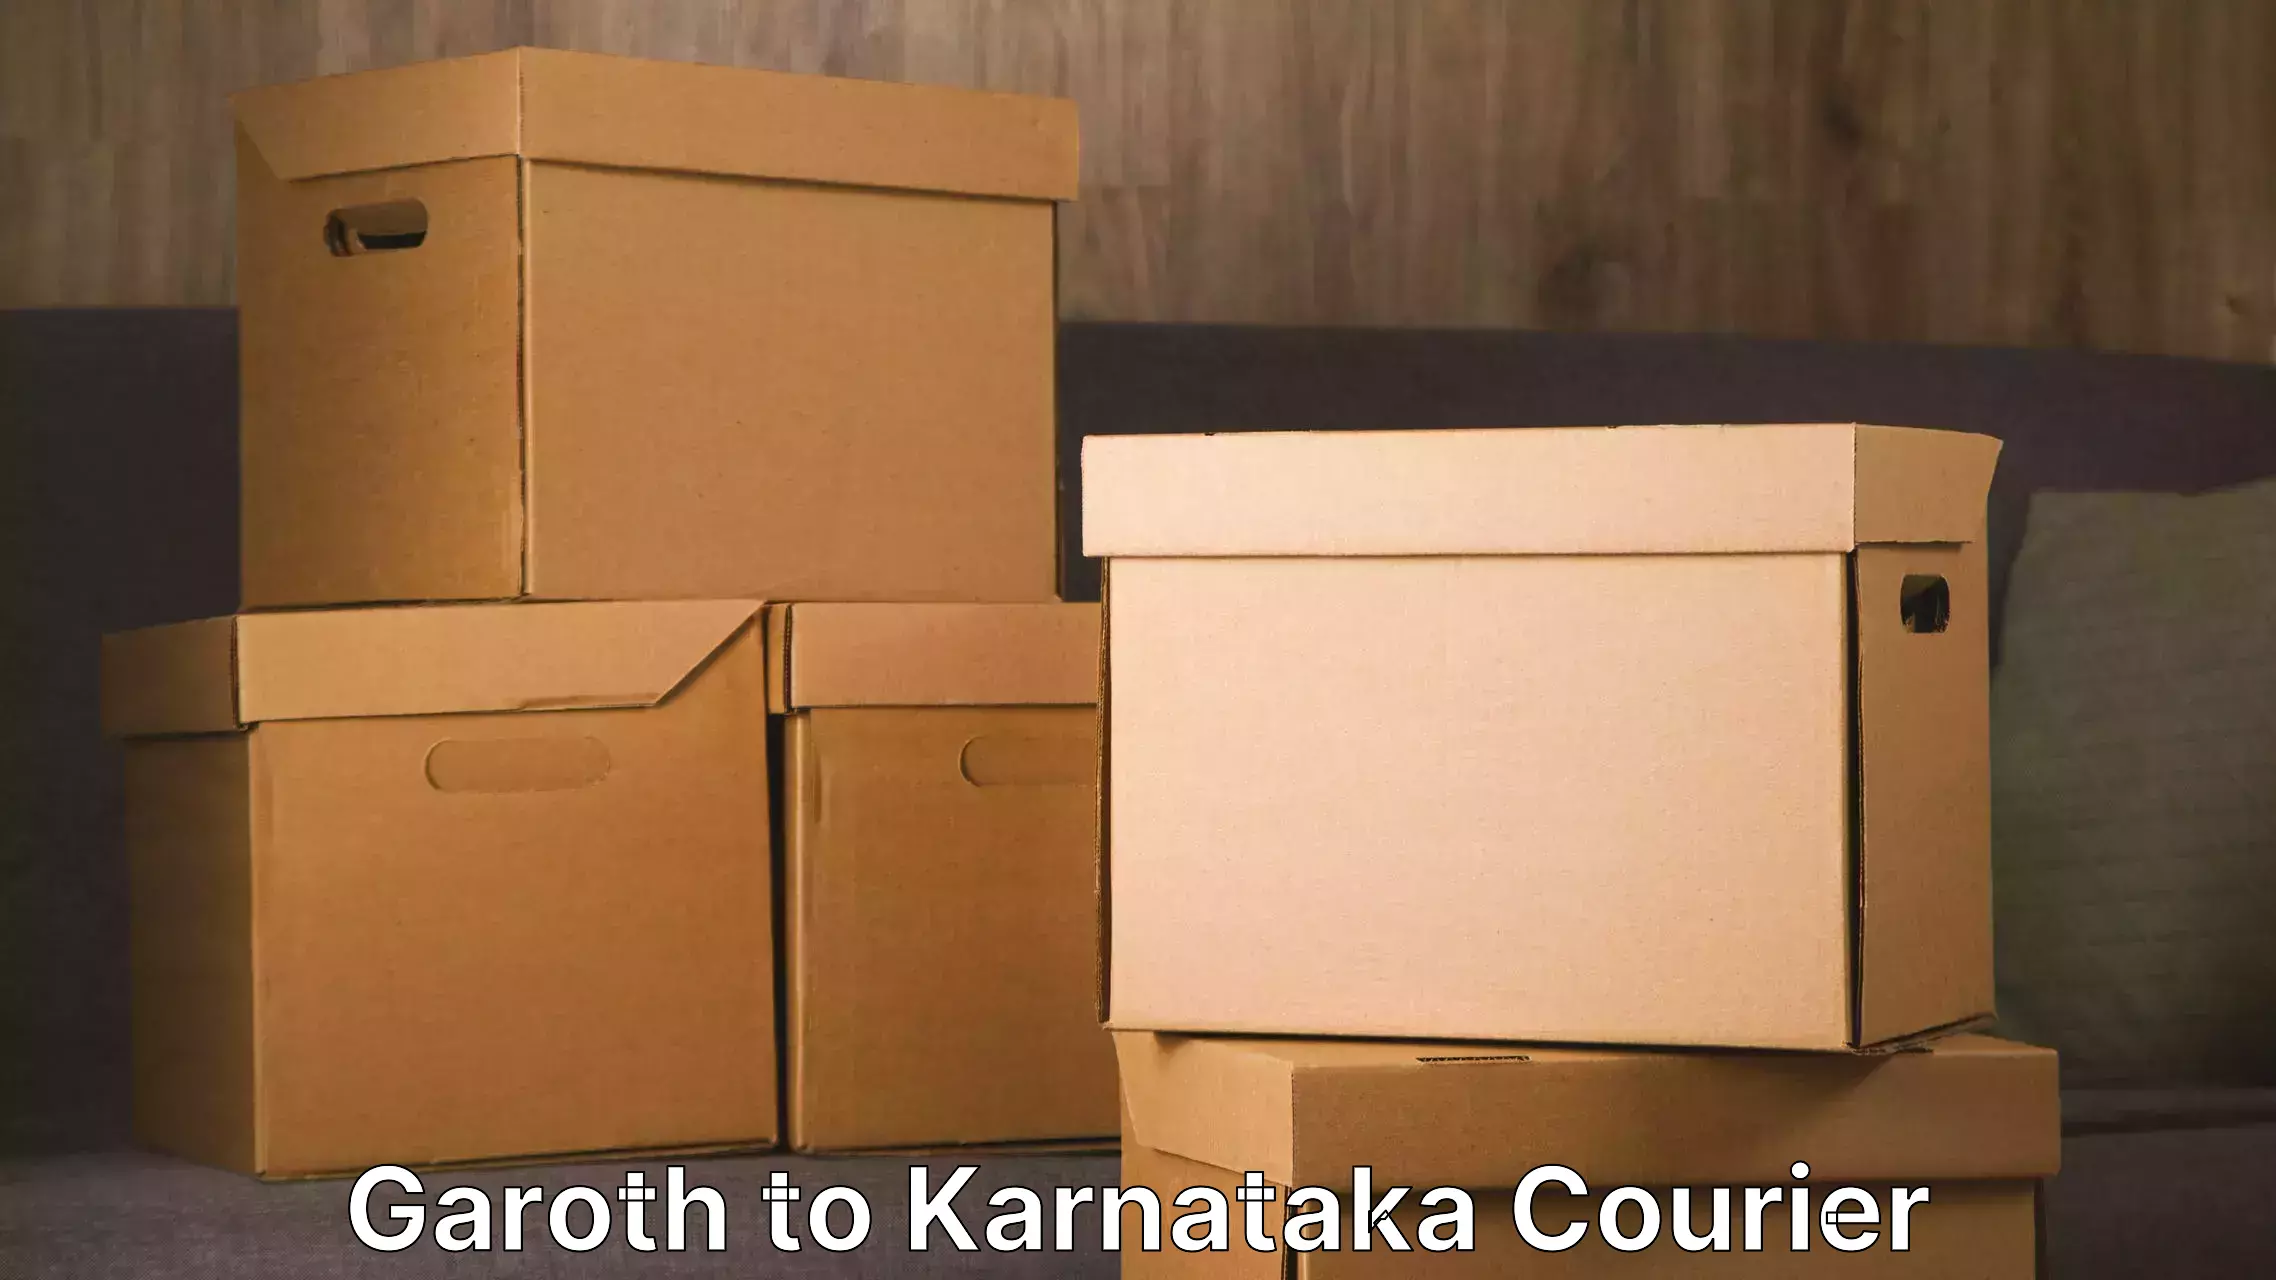 Furniture moving plans Garoth to Karnataka